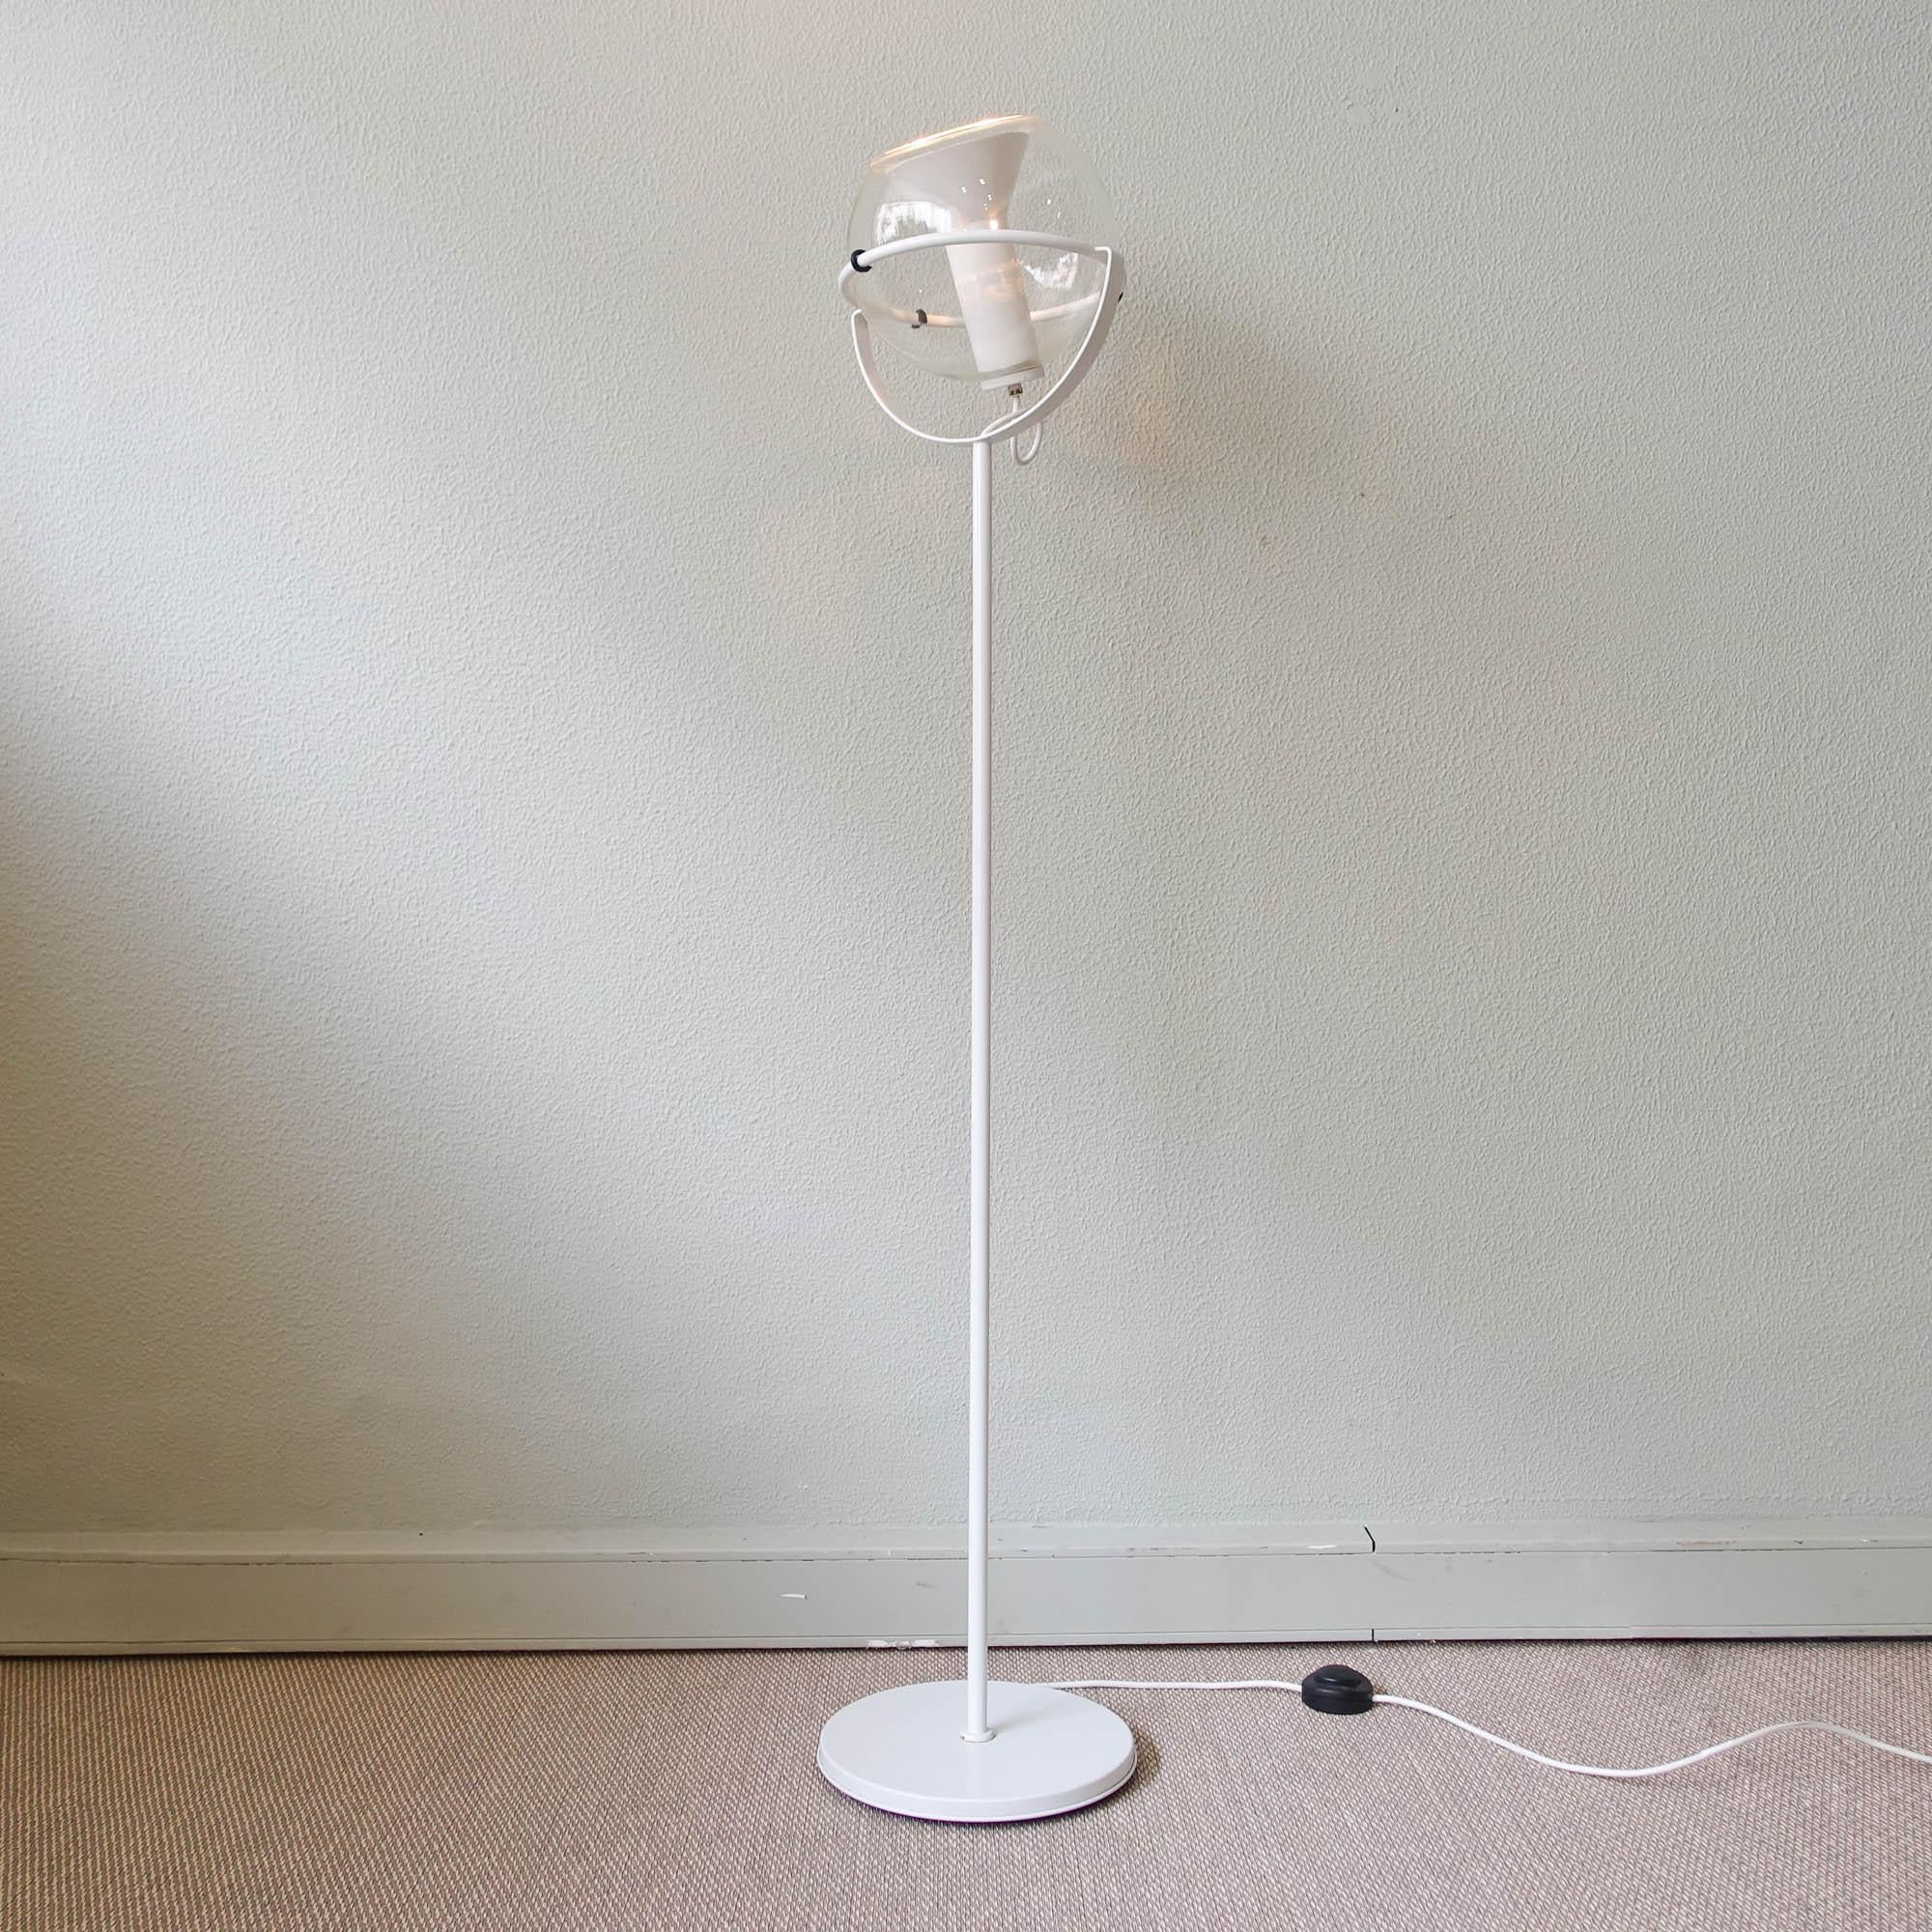 Ce lampadaire, modèle Globe, a été conçu à la fin des années cinquante par Frank Ligtelijn, un créateur de bijoux, pour RAAK, en Hollande. Ce fut un grand succès et ils ont été produits pendant de nombreuses années. Le globe de verre de ce